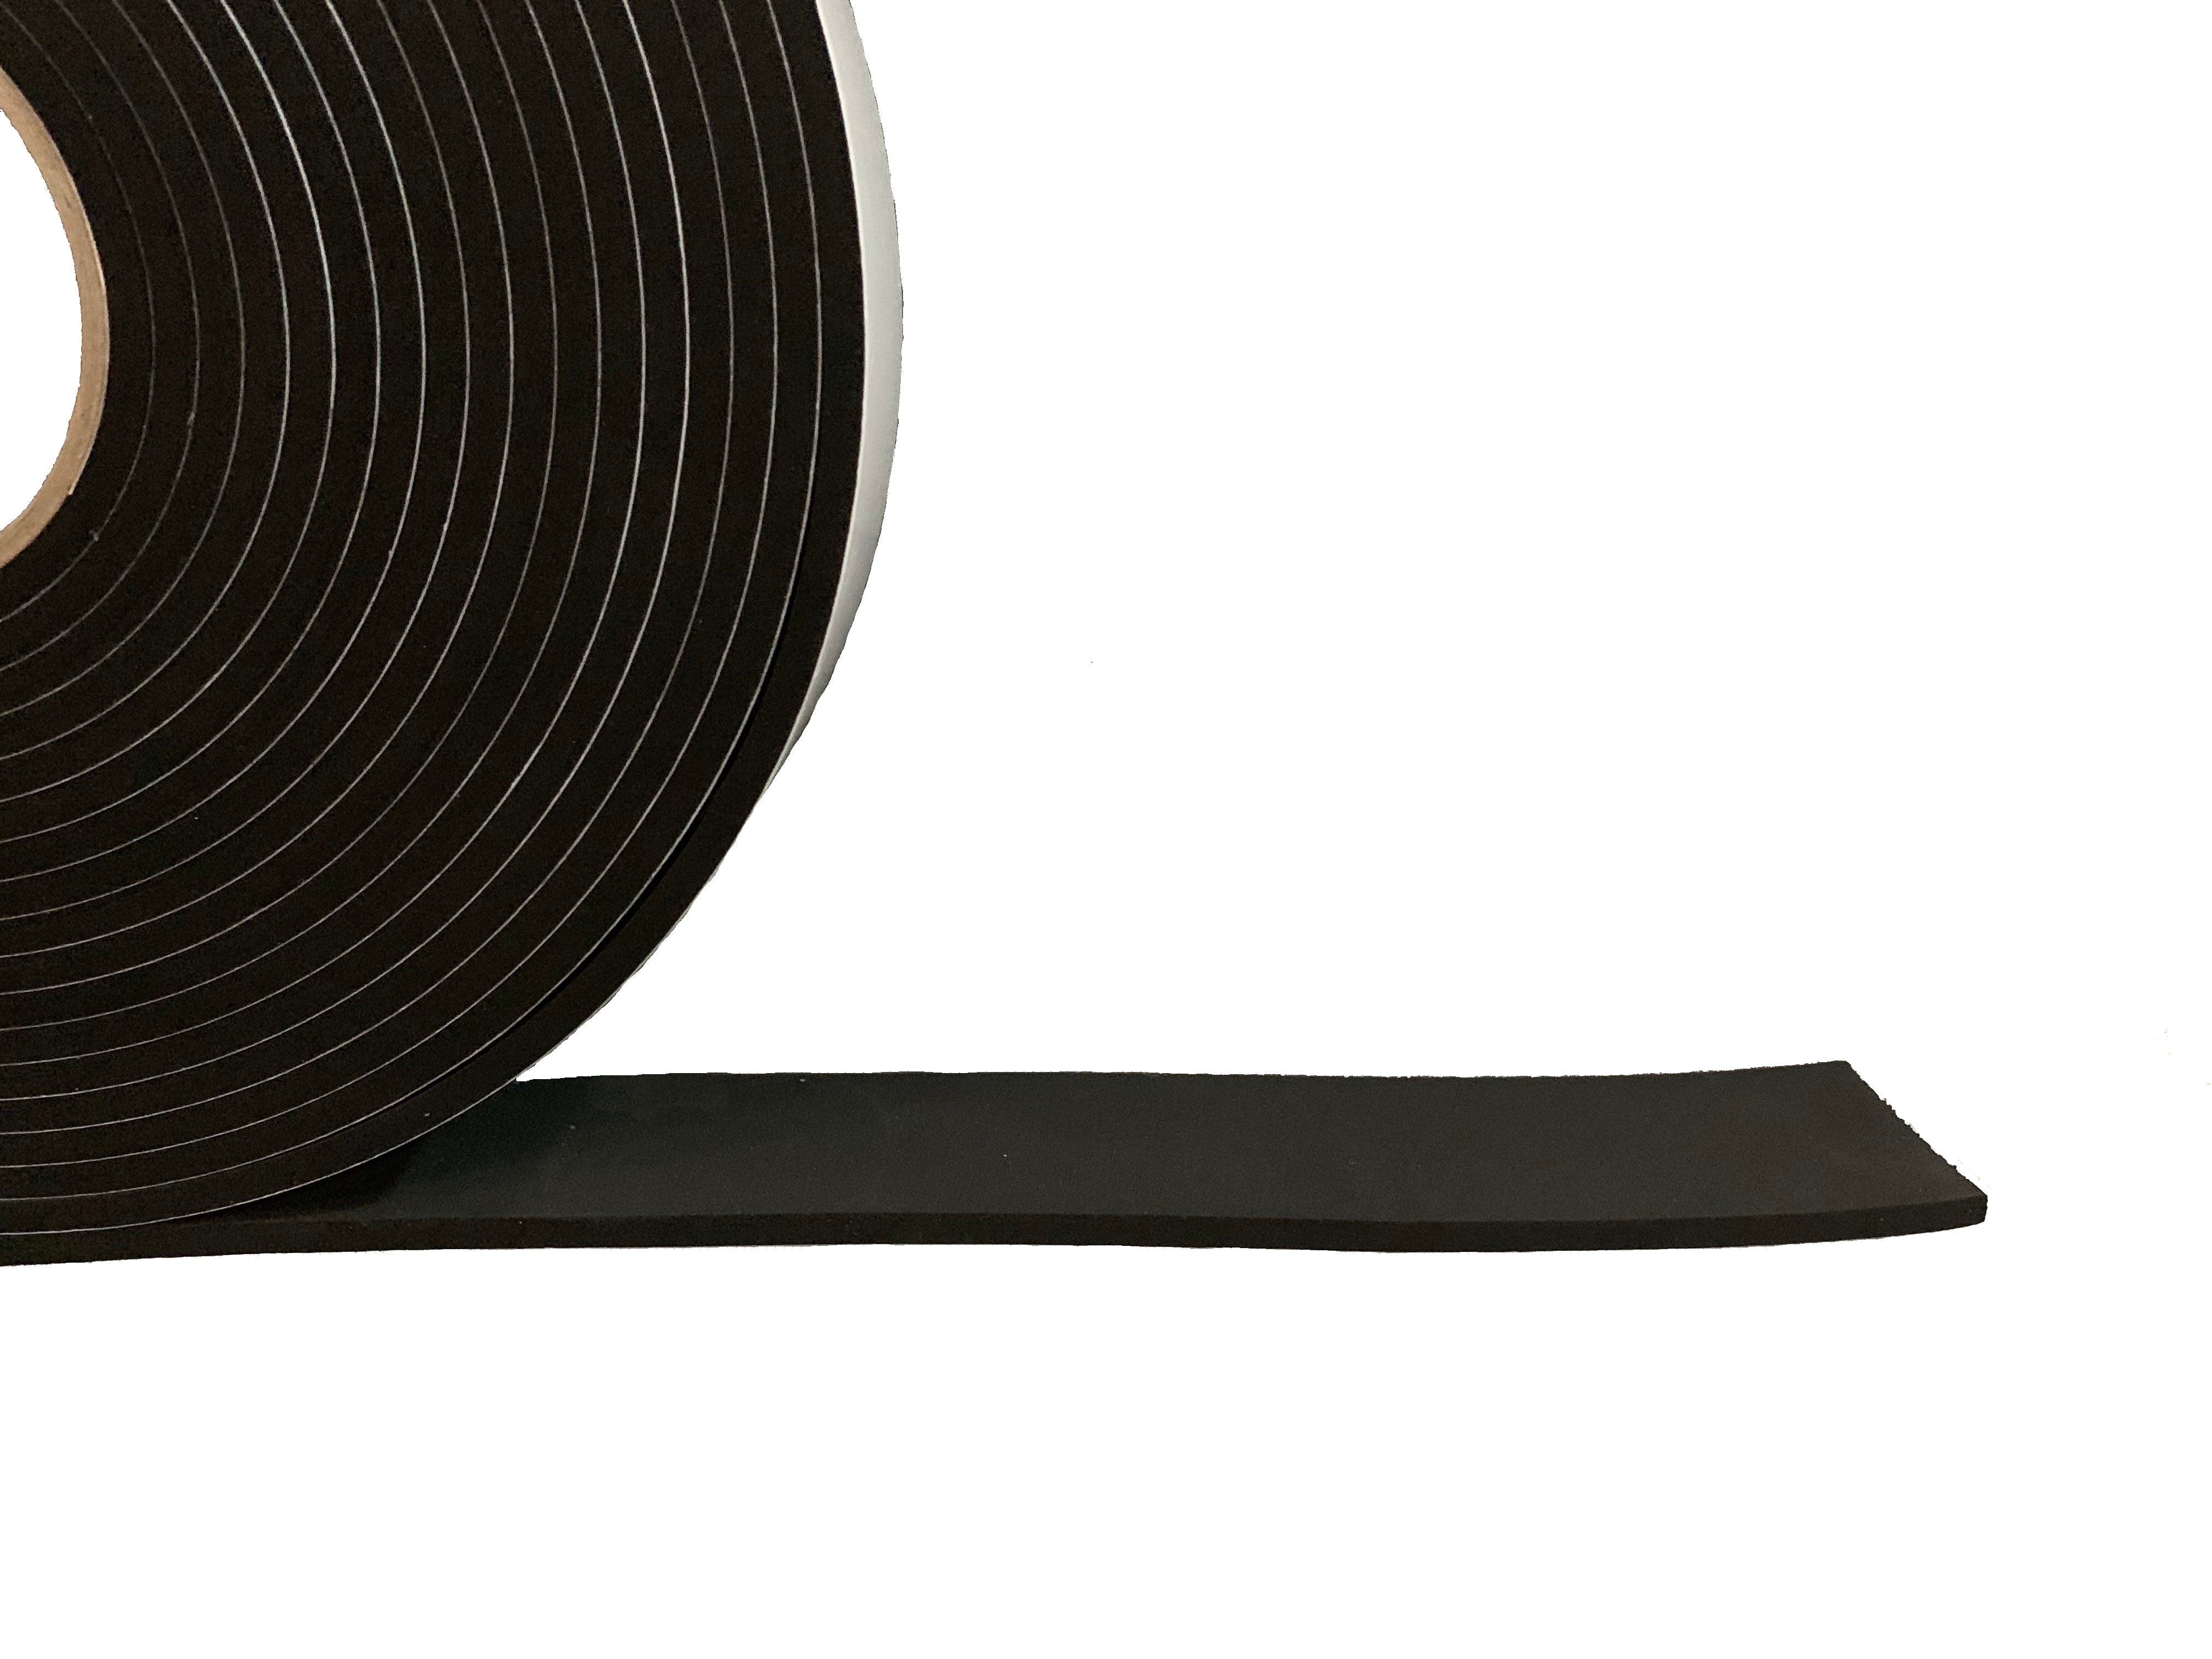 Widerstandsfähiges Dichtungsband – 10 mm dick x 25 mm breit x 10 m lang